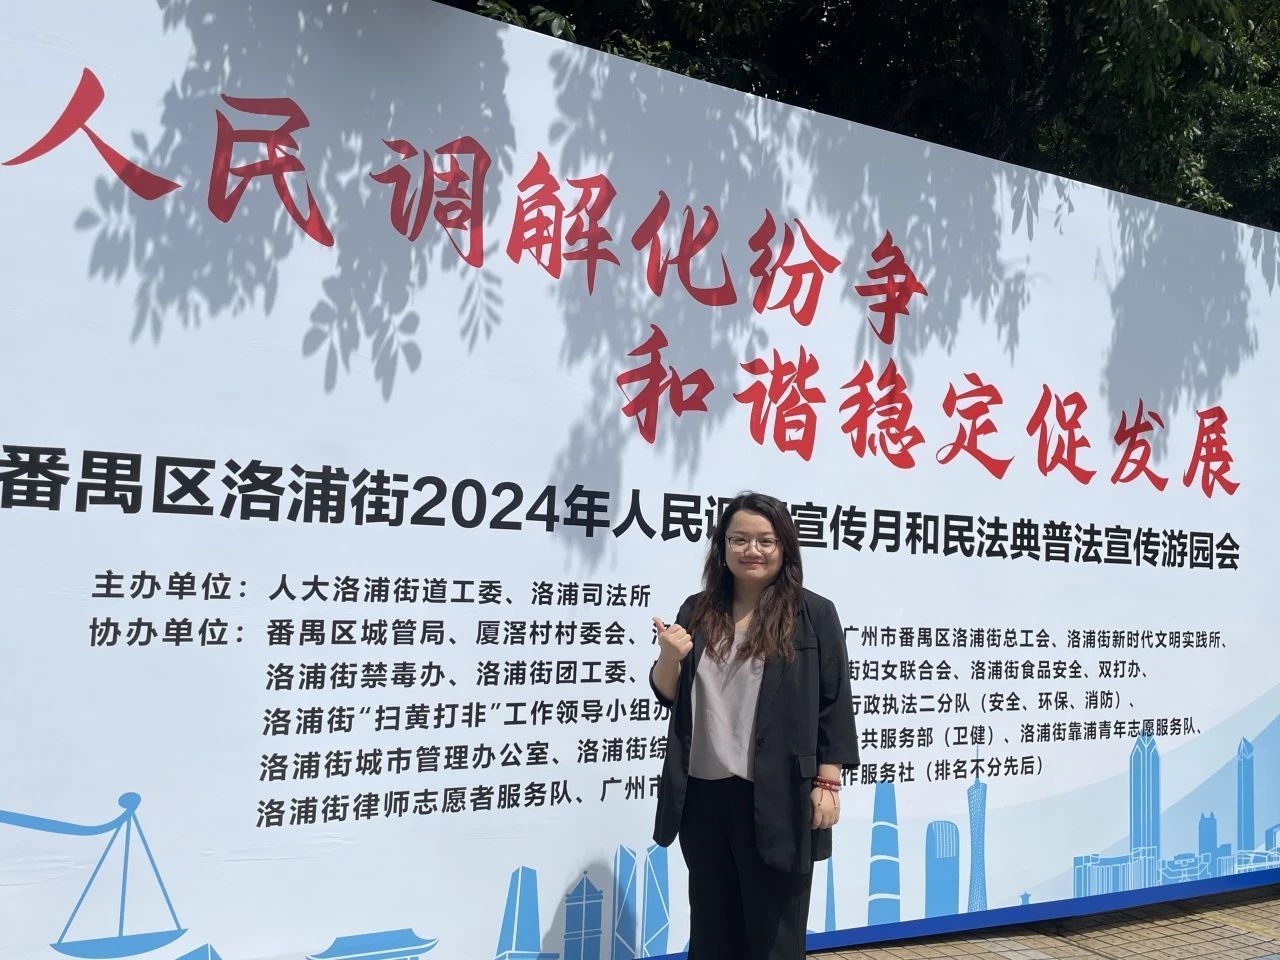 公益|刘晓凤律师参加番禺区洛浦街人民调解宣传月和民法典普法游园会